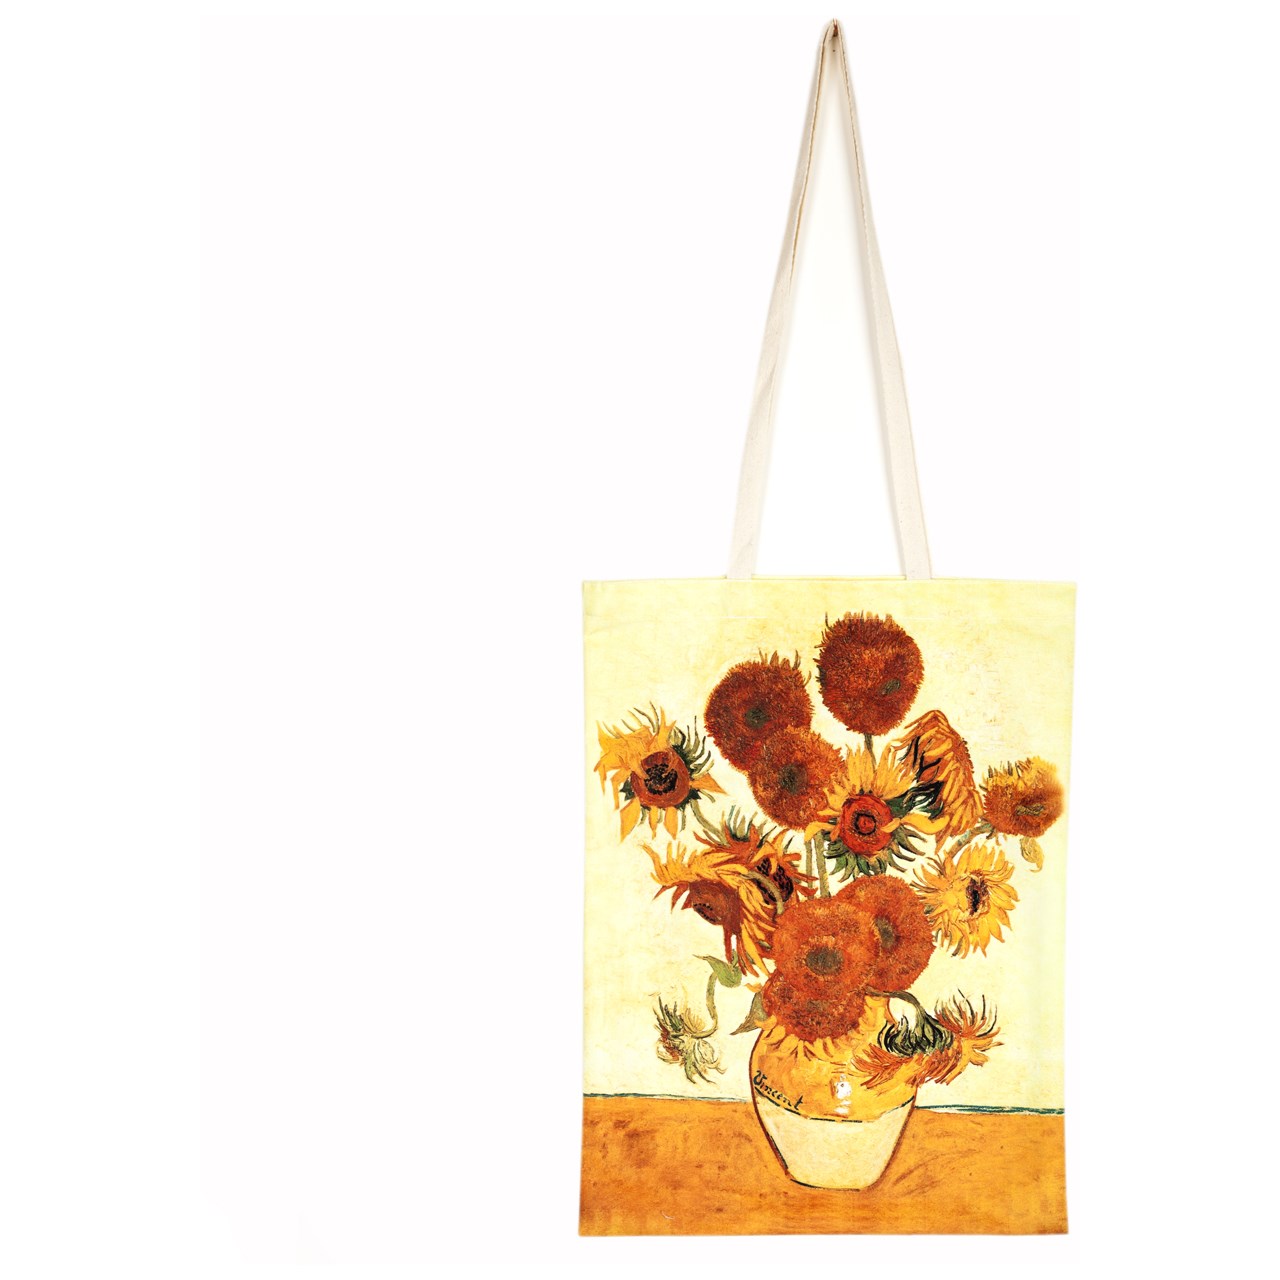 ساک خرید و هدیه مخمل رنگارشاپ طرح گل های آفتاب گردان ونگوگ مدل BAG004